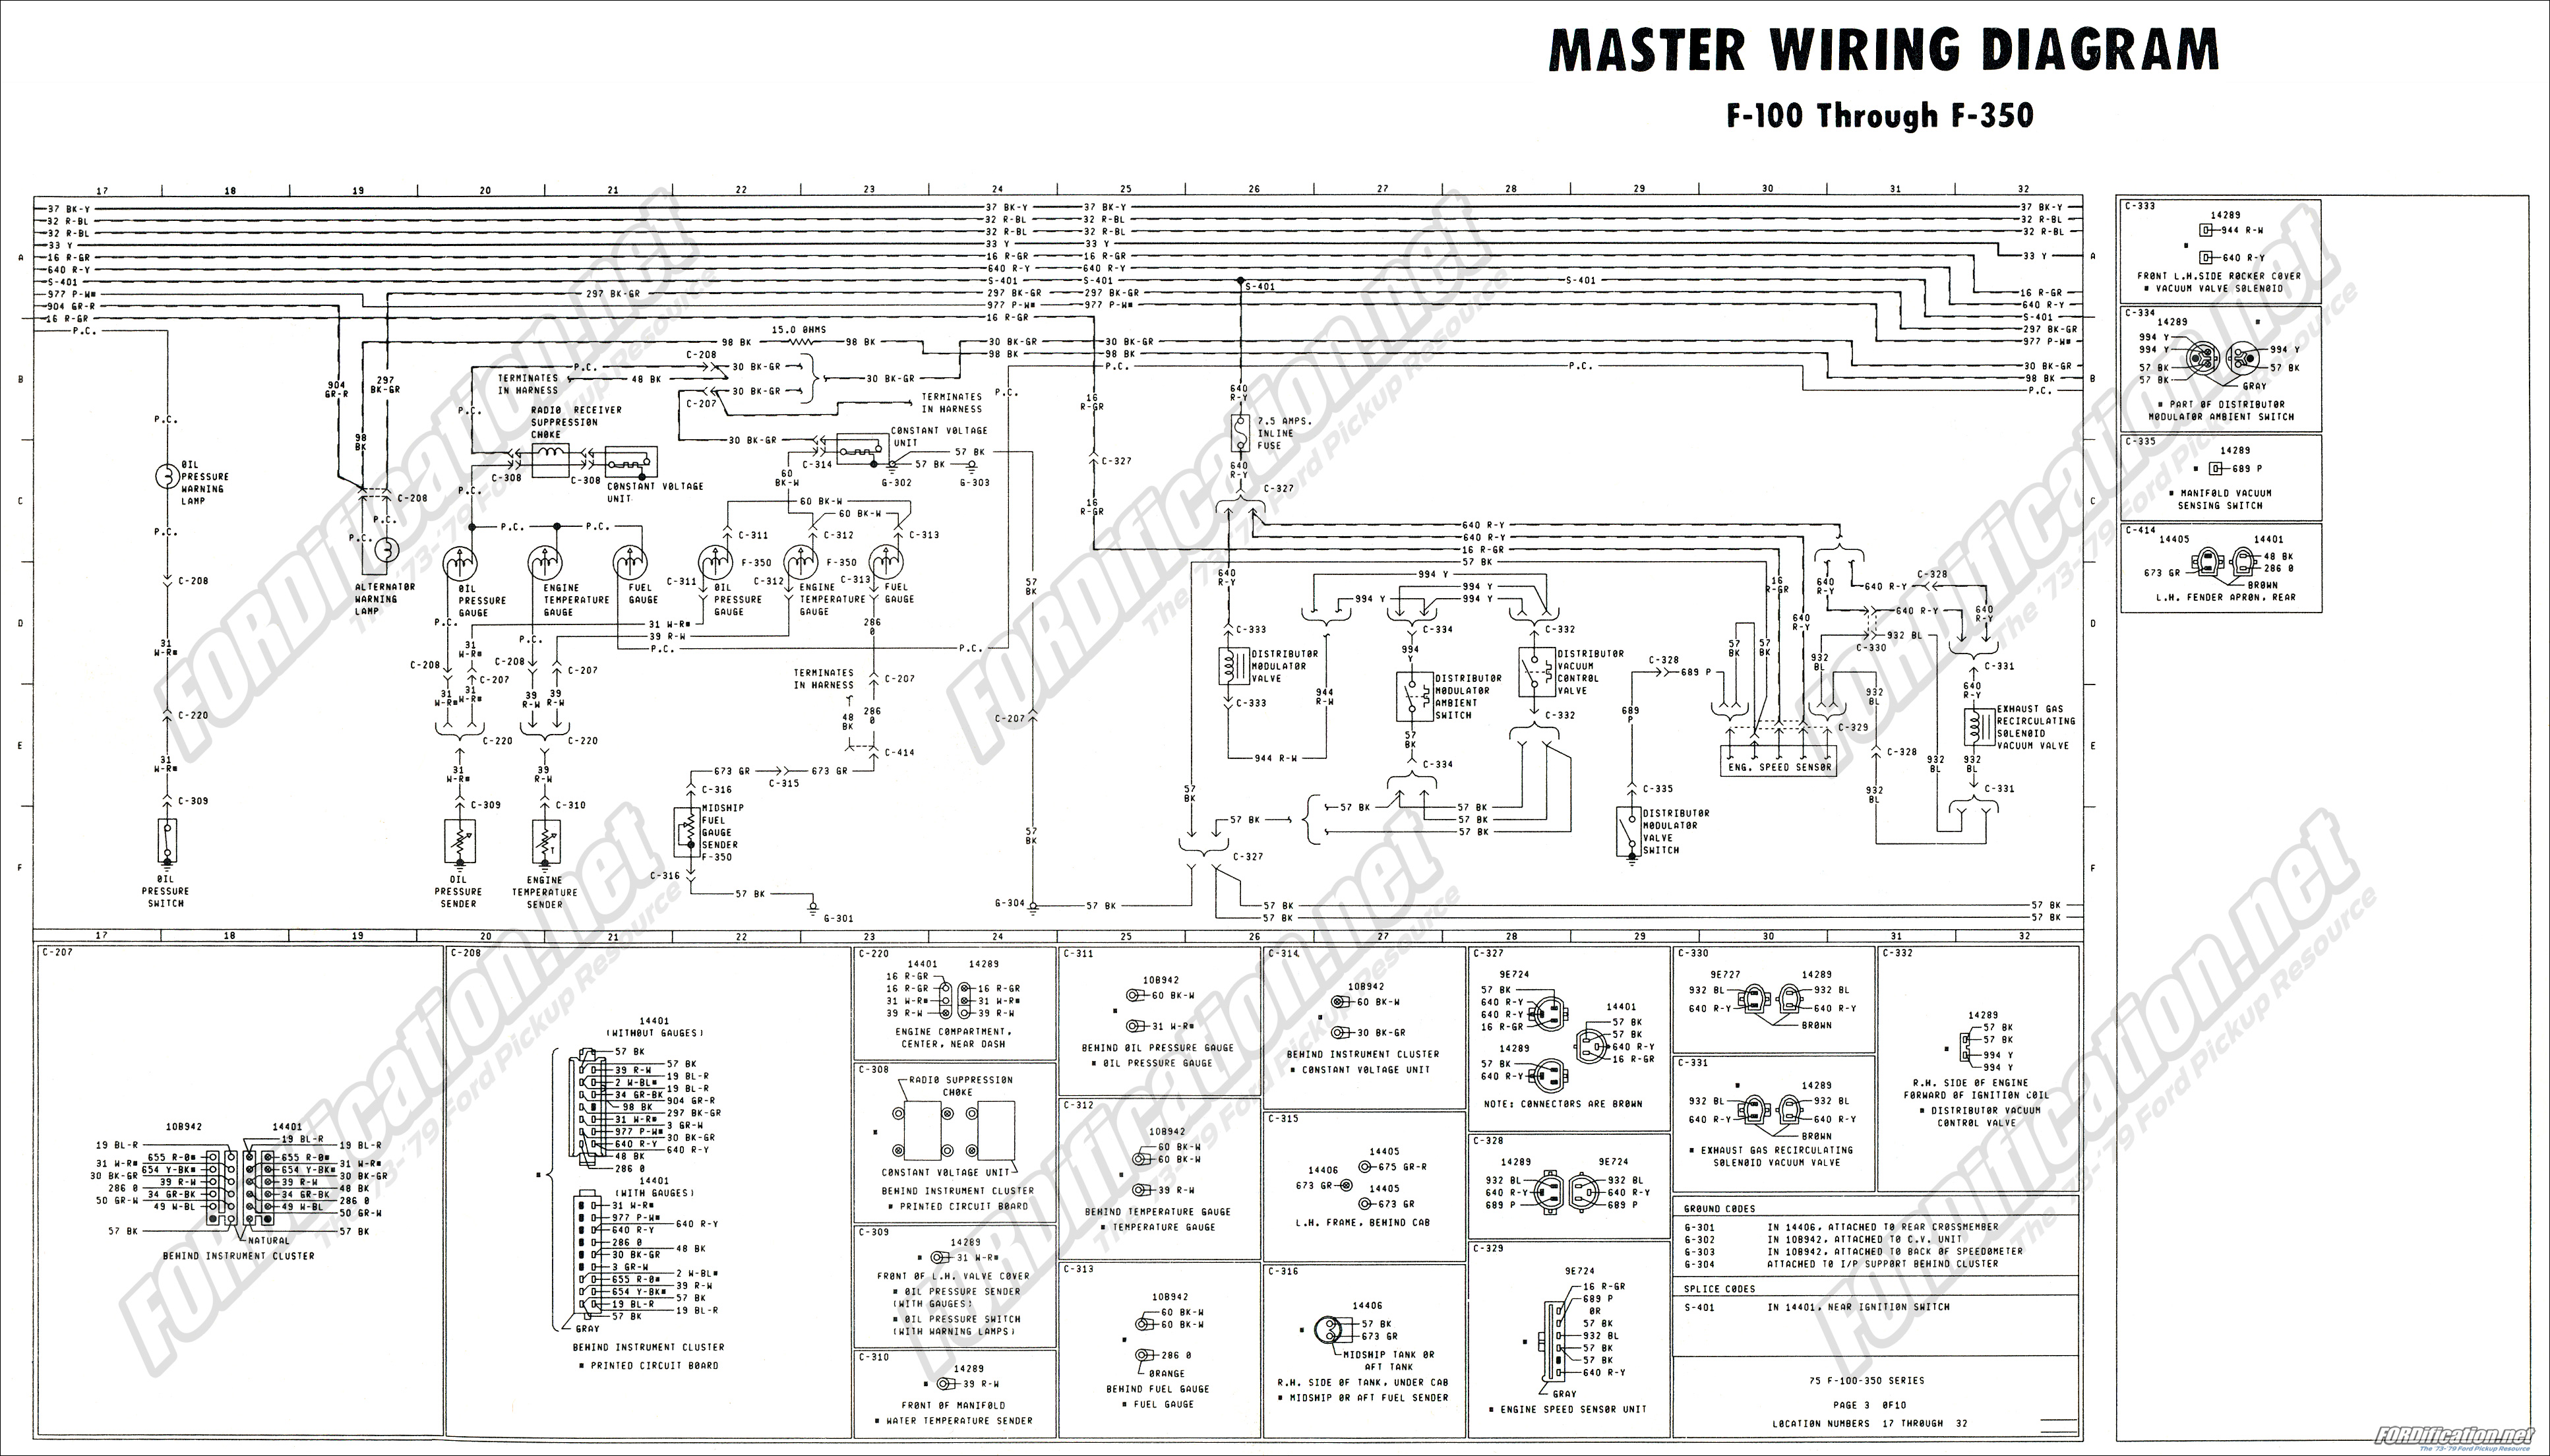 1973-1979 Ford Truck Wiring Diagrams & Schematics - FORDification.net Ford Alternator Wiring Diagram FORDification.net